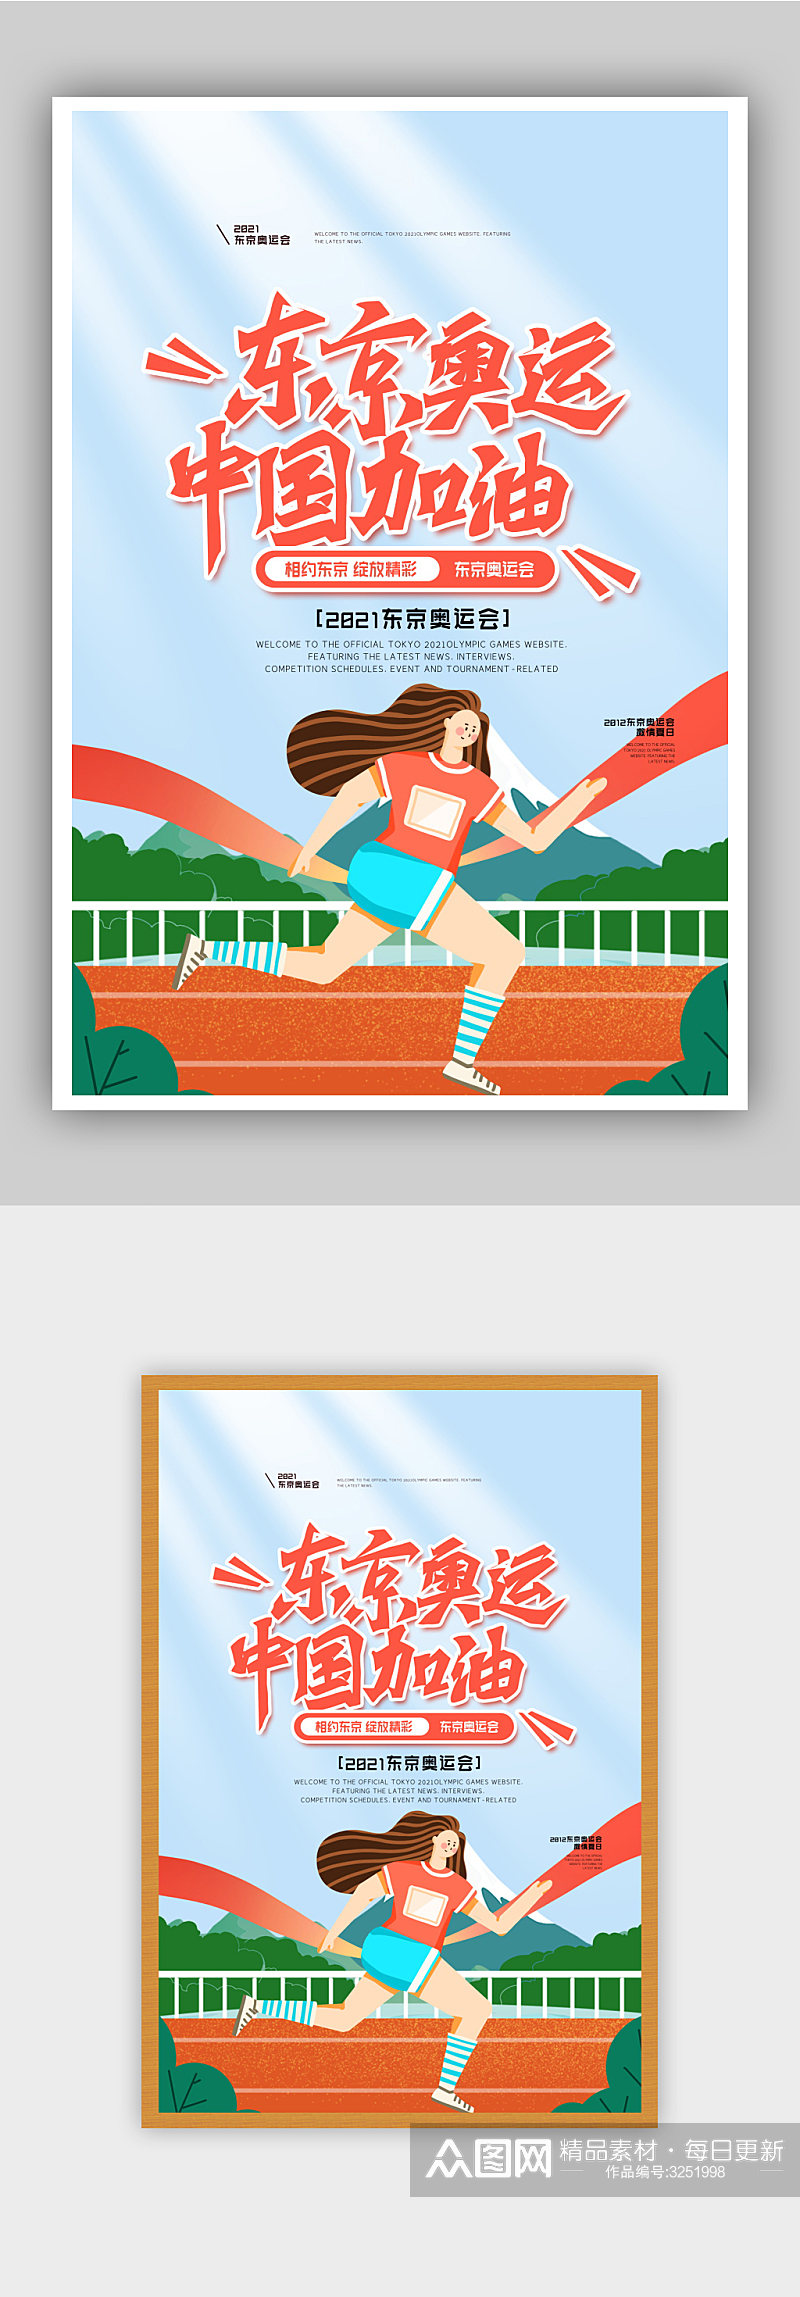 简约东京奥运会海报设素材